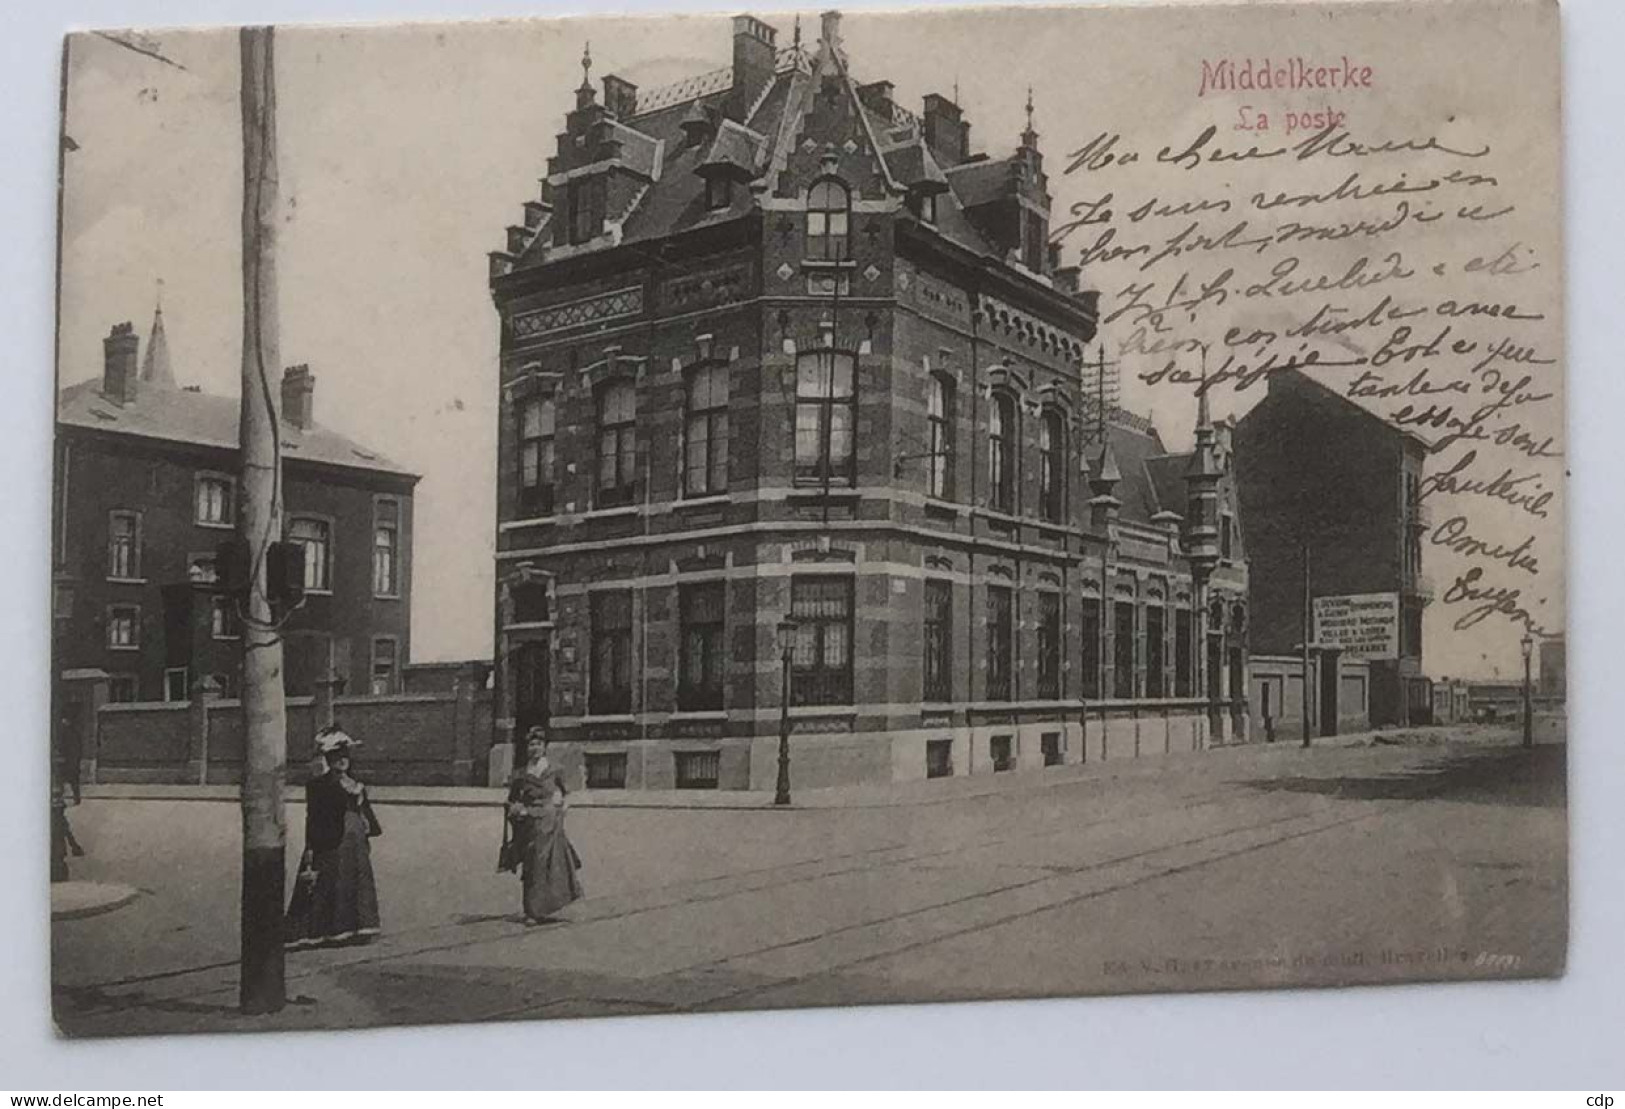 Cpa MIDDELKERKE   1905   Poste - Middelkerke